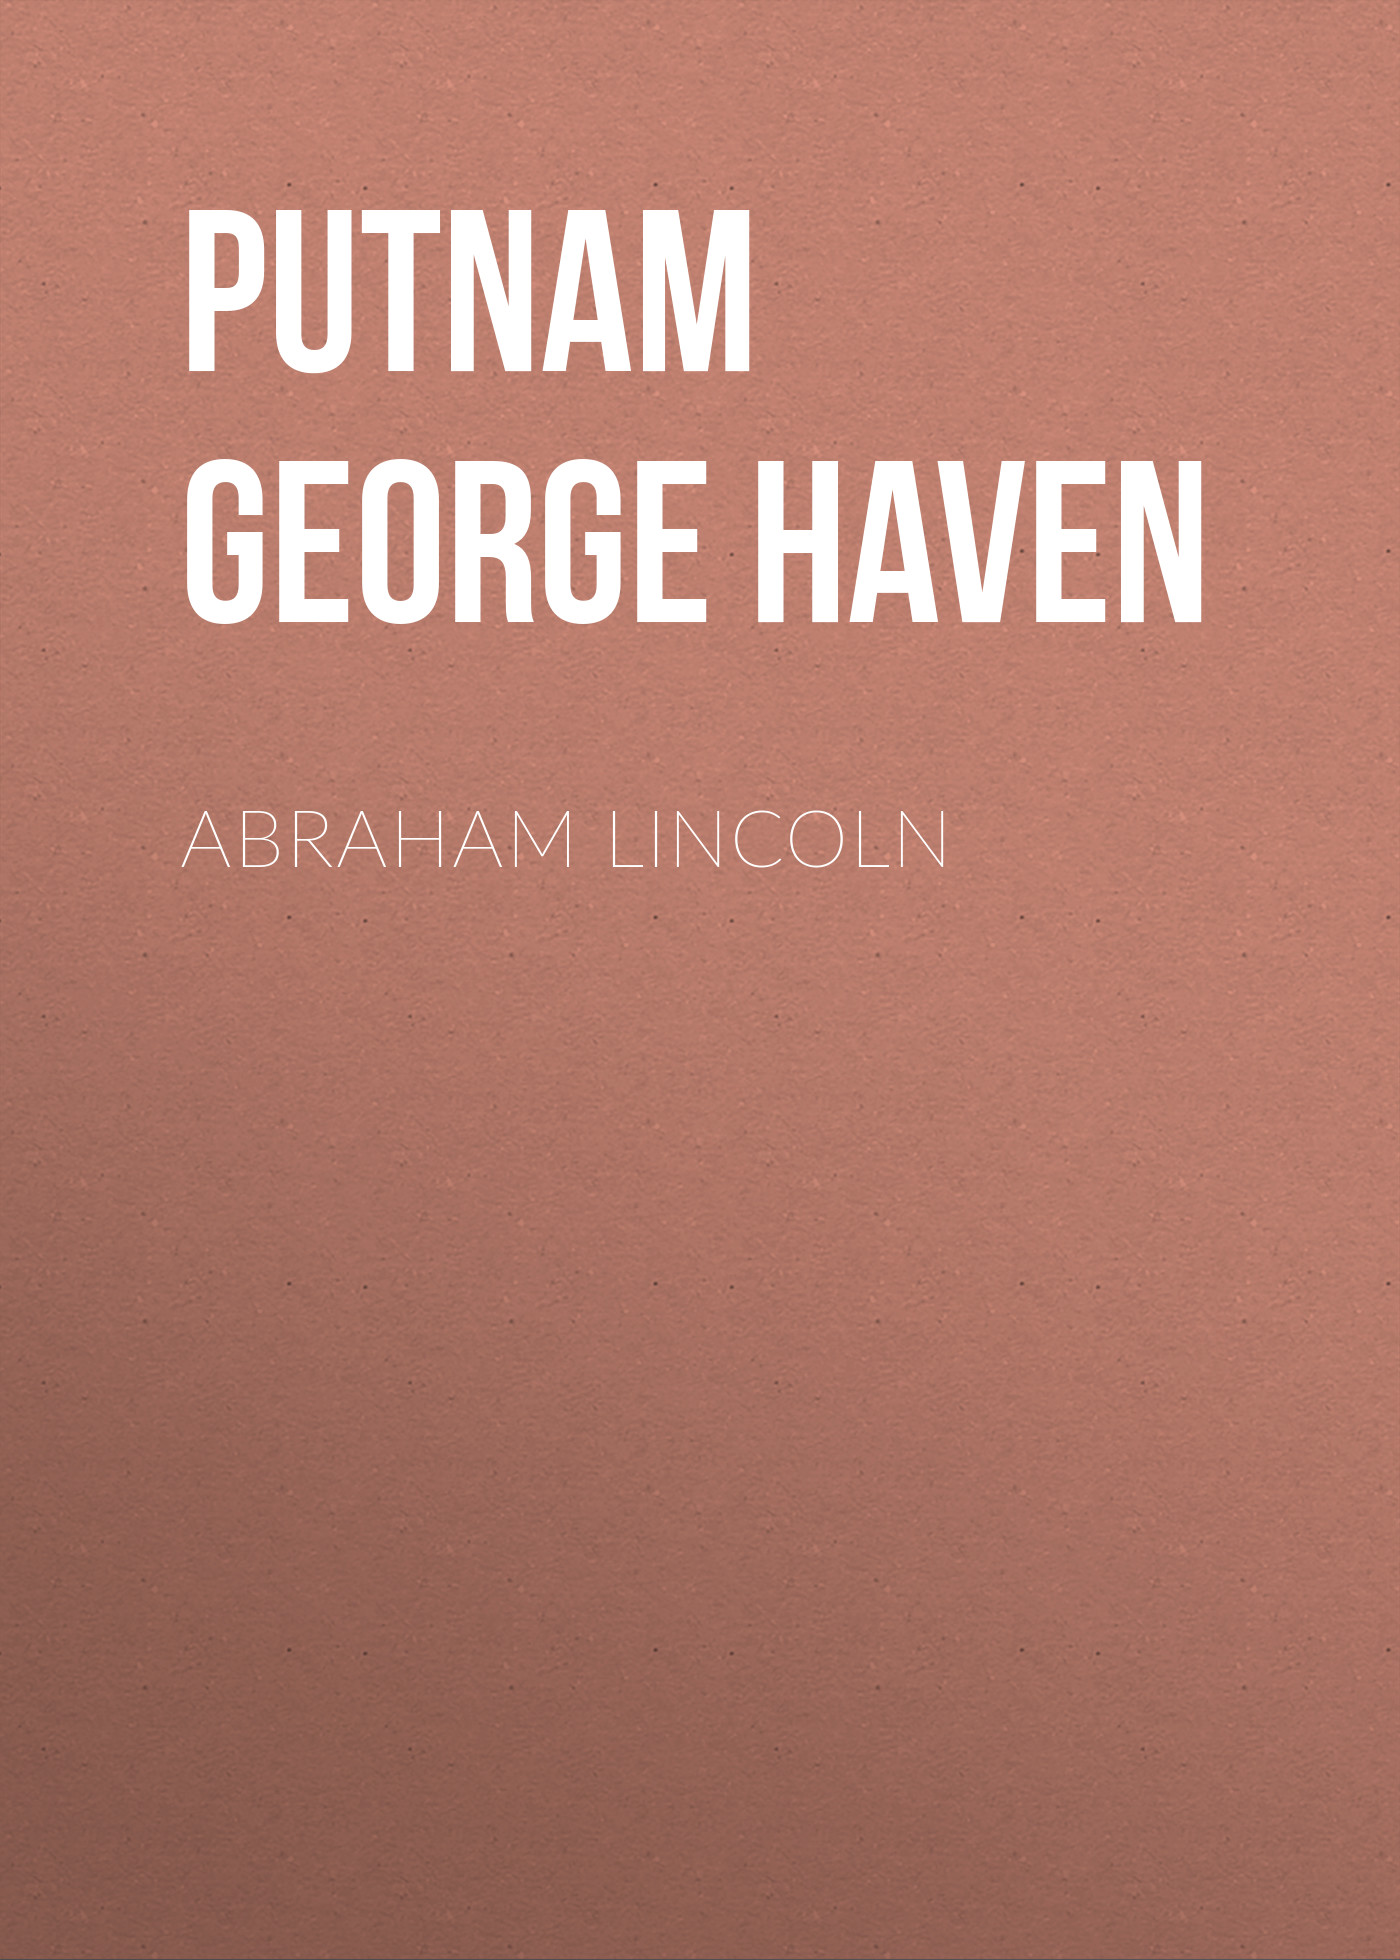 Книга Abraham Lincoln из серии , созданная George Putnam, может относится к жанру Зарубежная старинная литература, Зарубежная классика. Стоимость электронной книги Abraham Lincoln с идентификатором 25292923 составляет 0 руб.